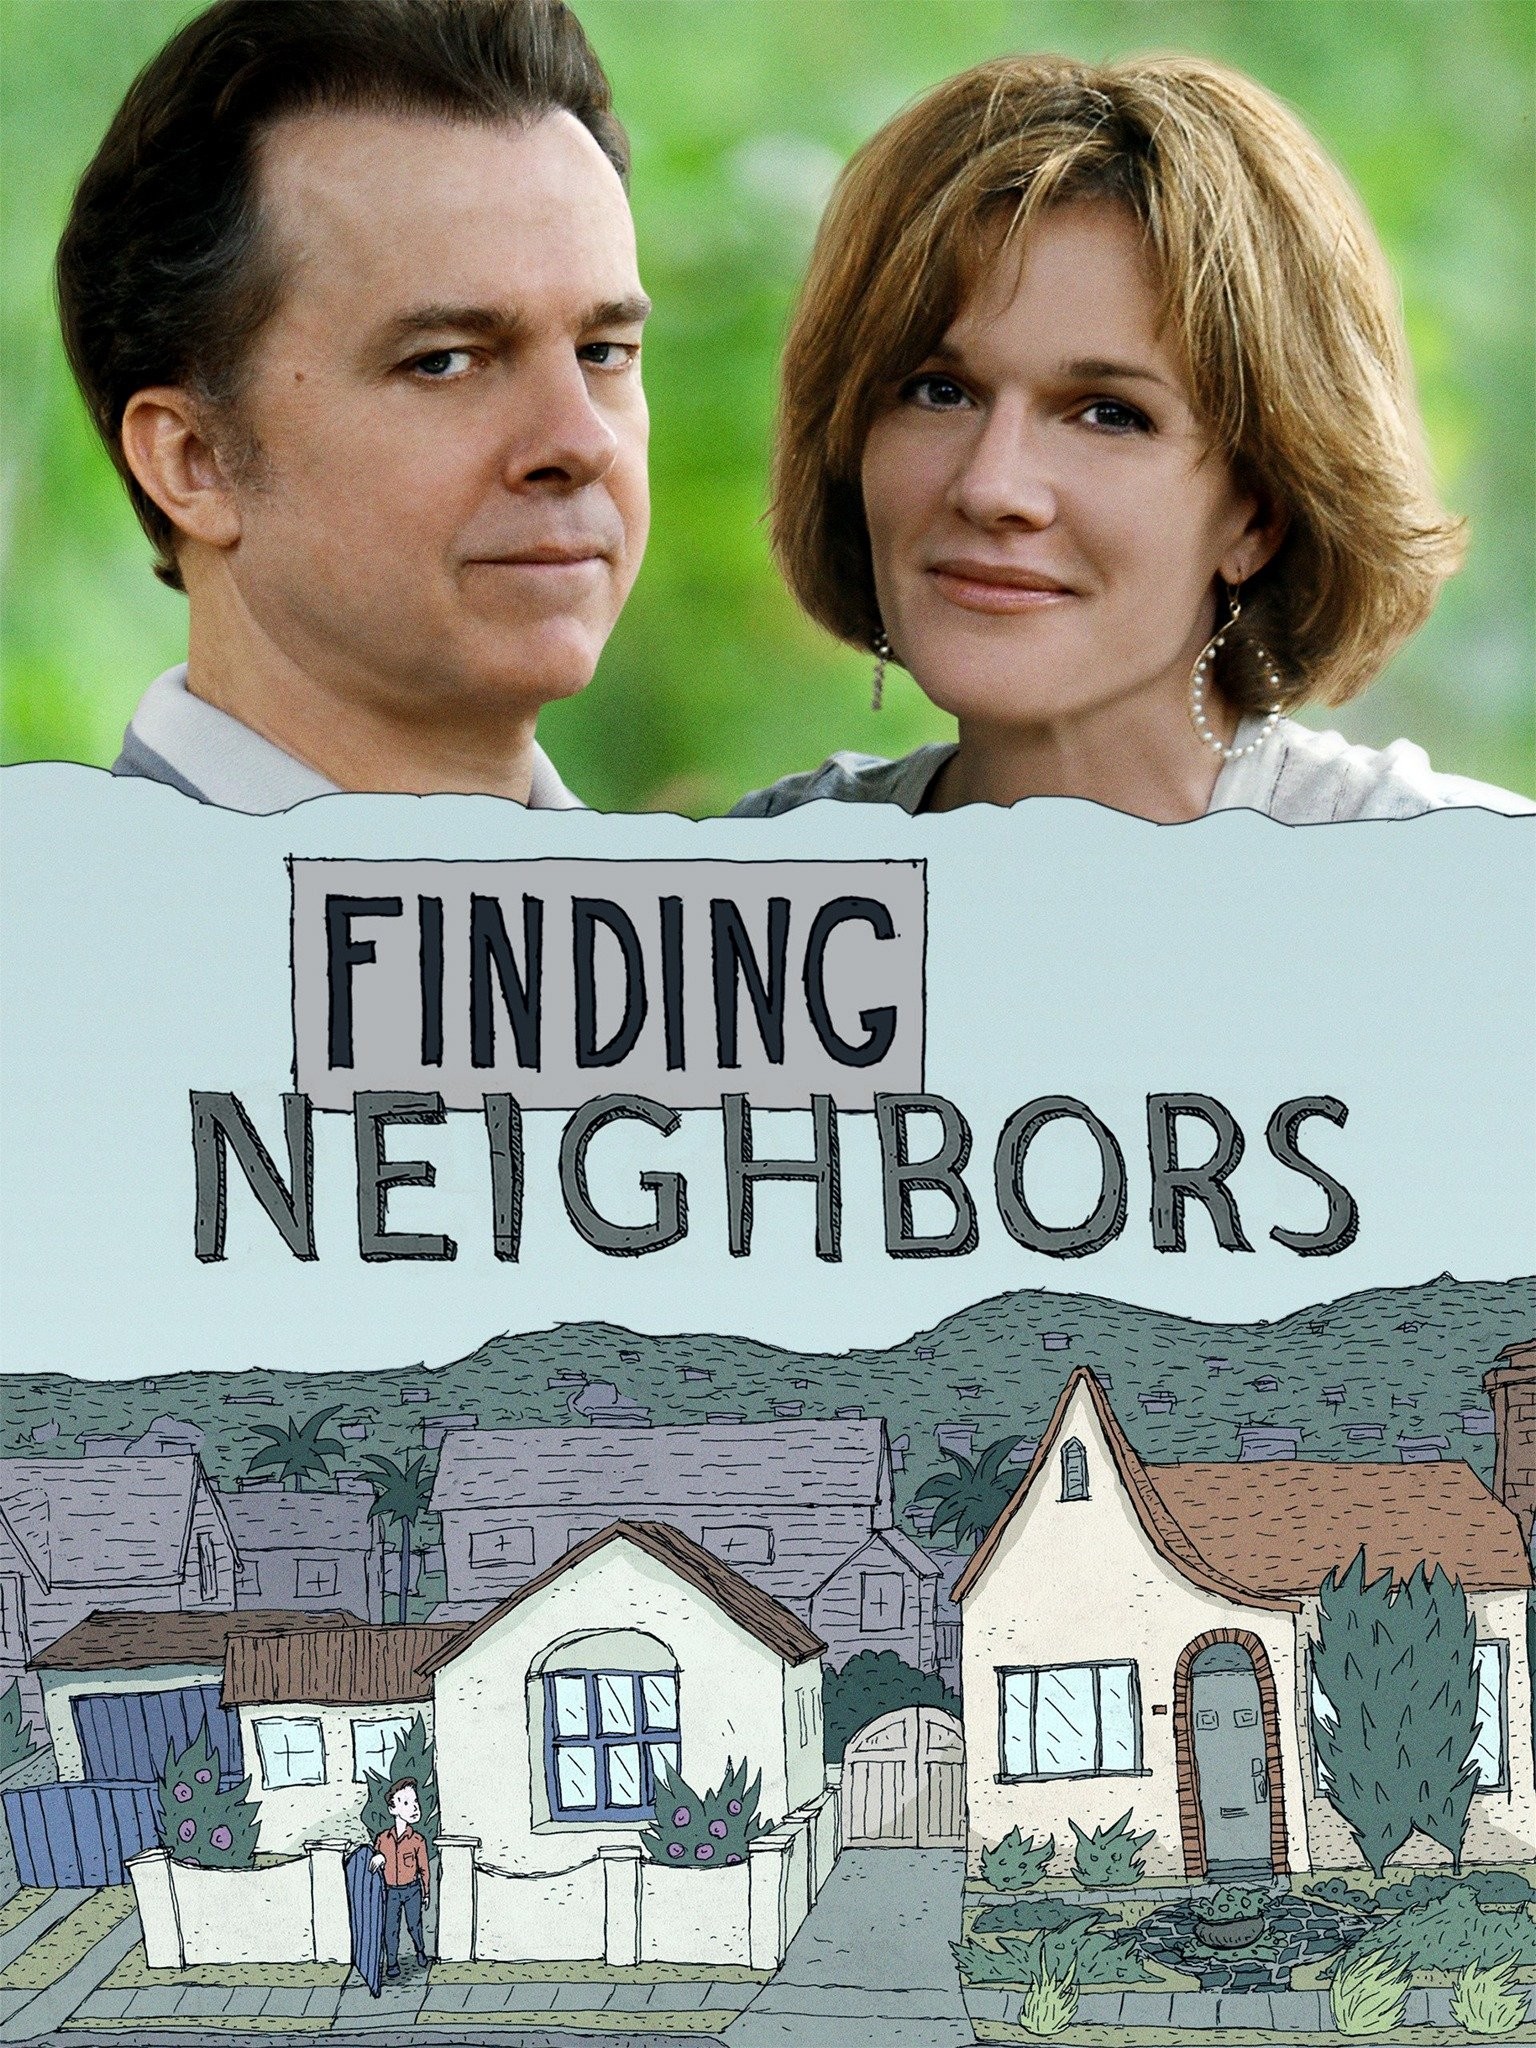 Neighbors - Movie - Where To Watch